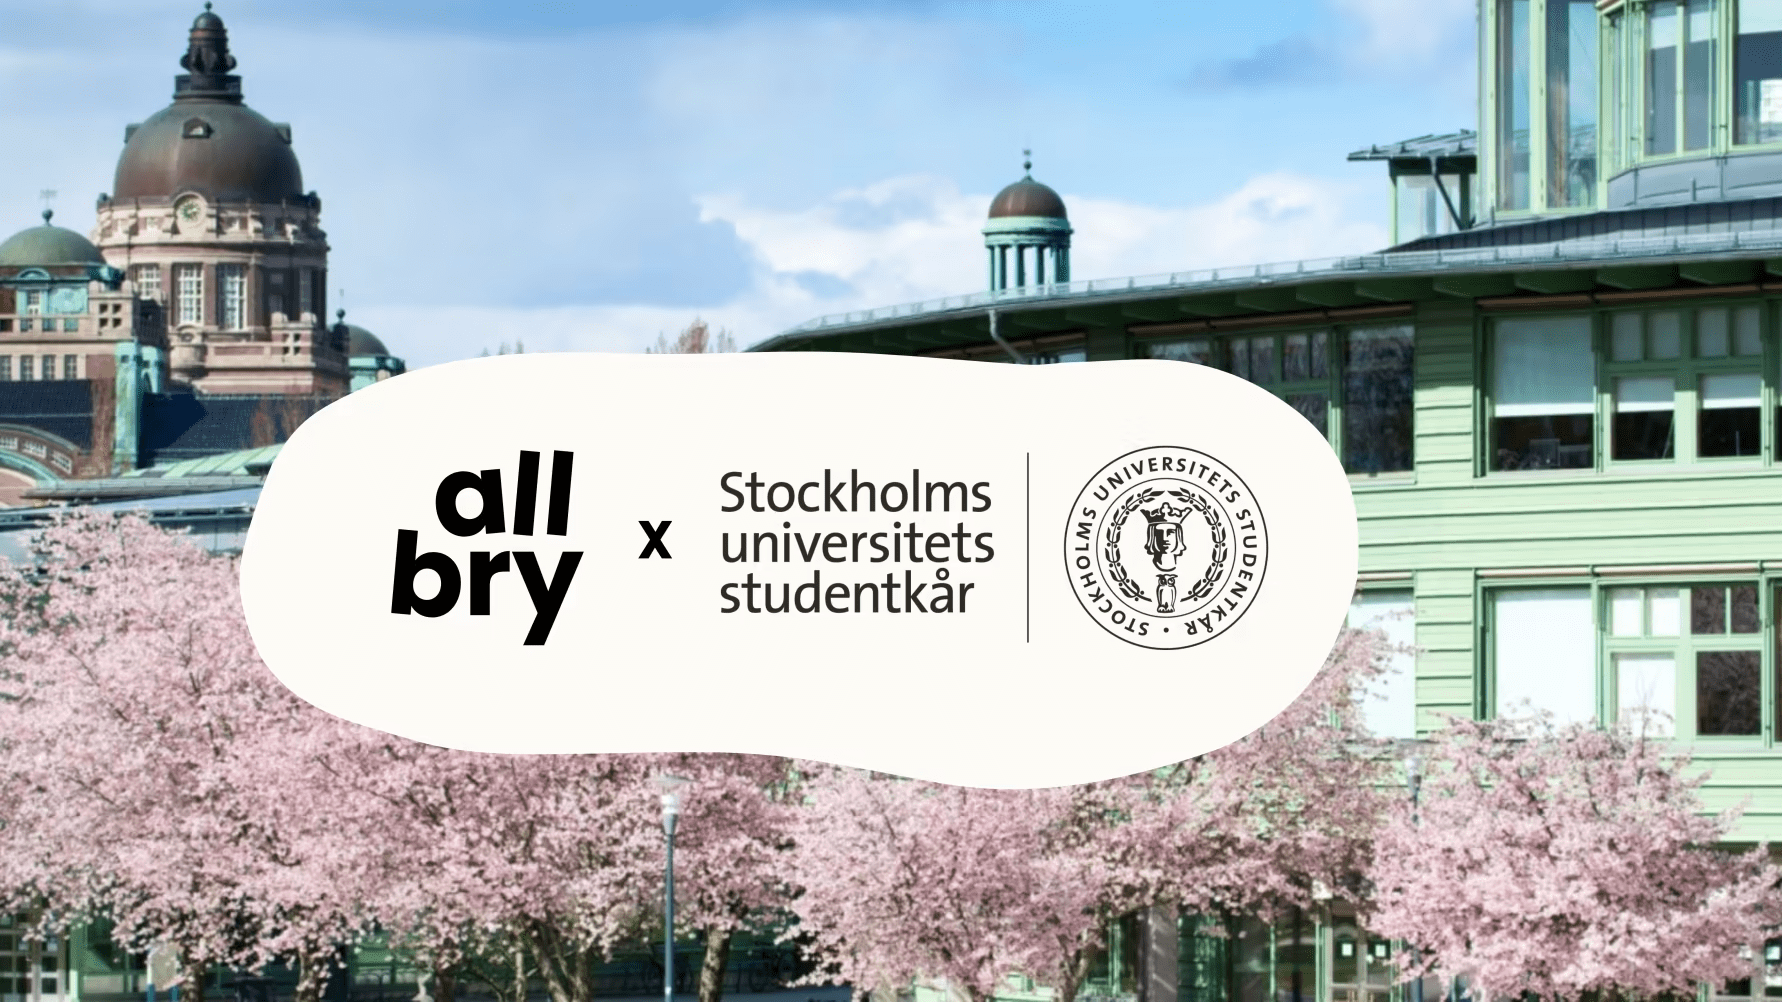 Stockholms universitets studentkår tillgängliggör Allbry för studenter i nytt initiativ för godare psykisk hälsa